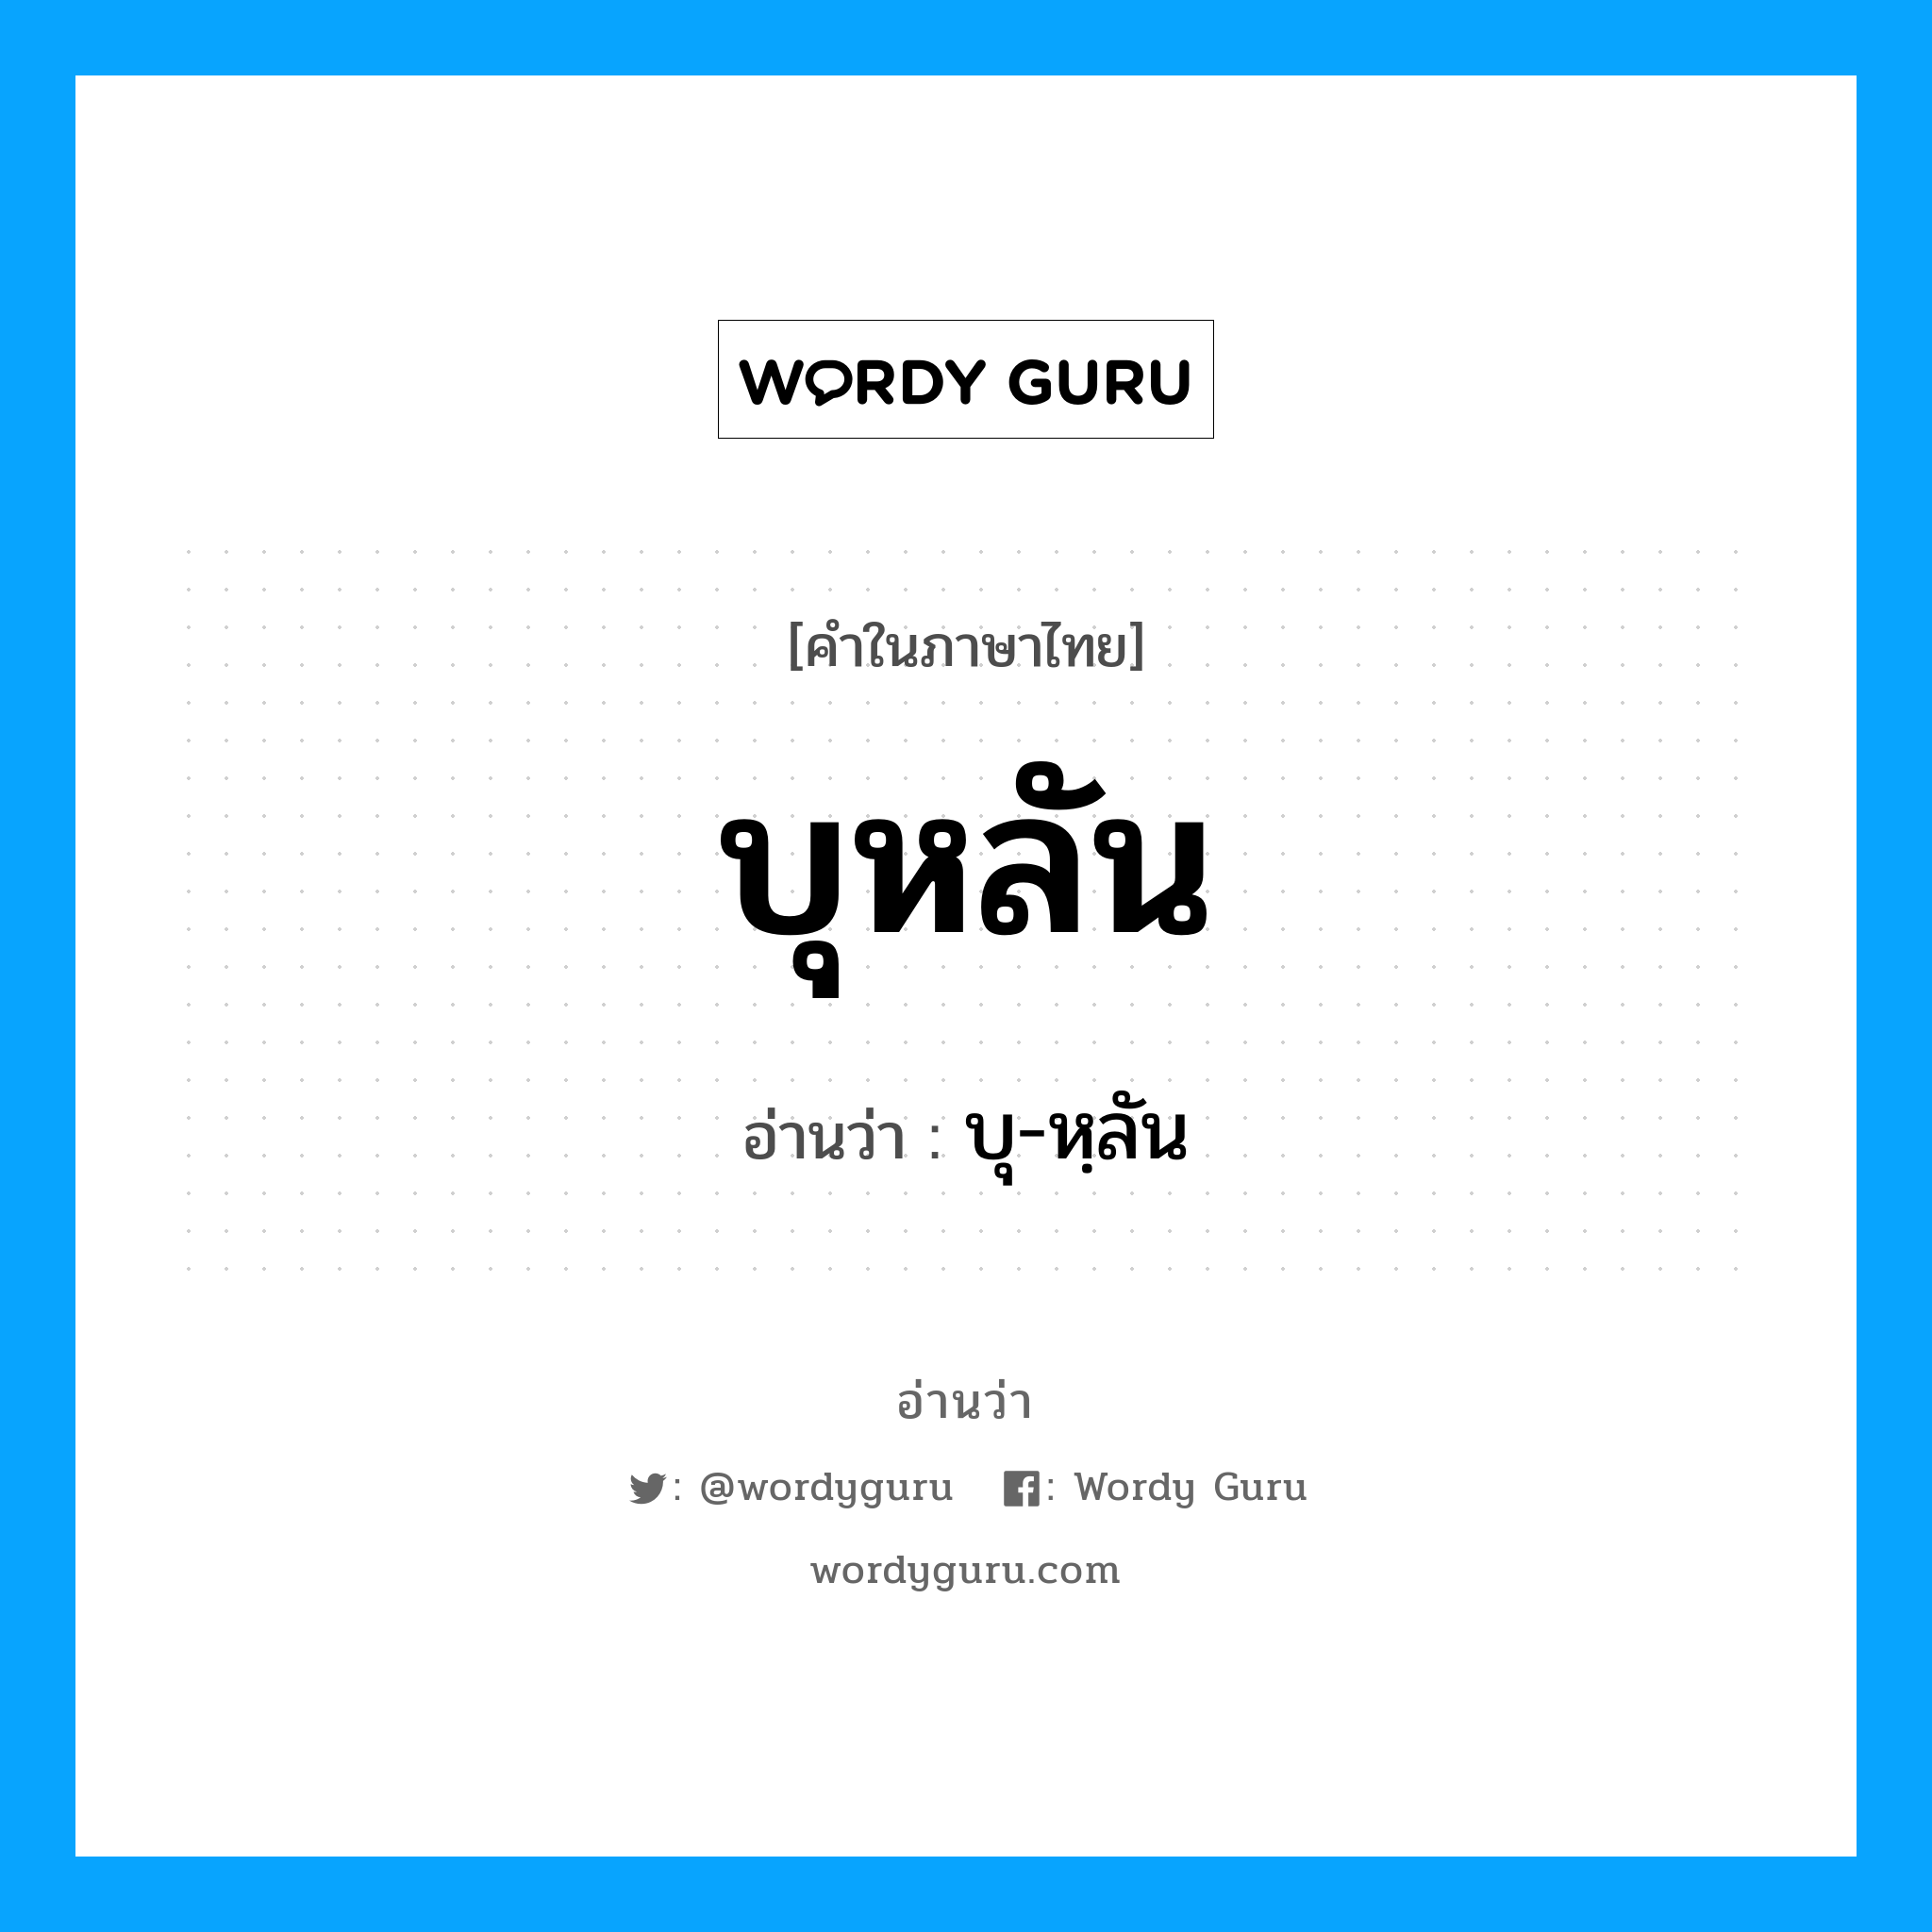 บุ-หฺลัน เป็นคำอ่านของคำไหน?, คำในภาษาไทย บุ-หฺลัน อ่านว่า บุหลัน